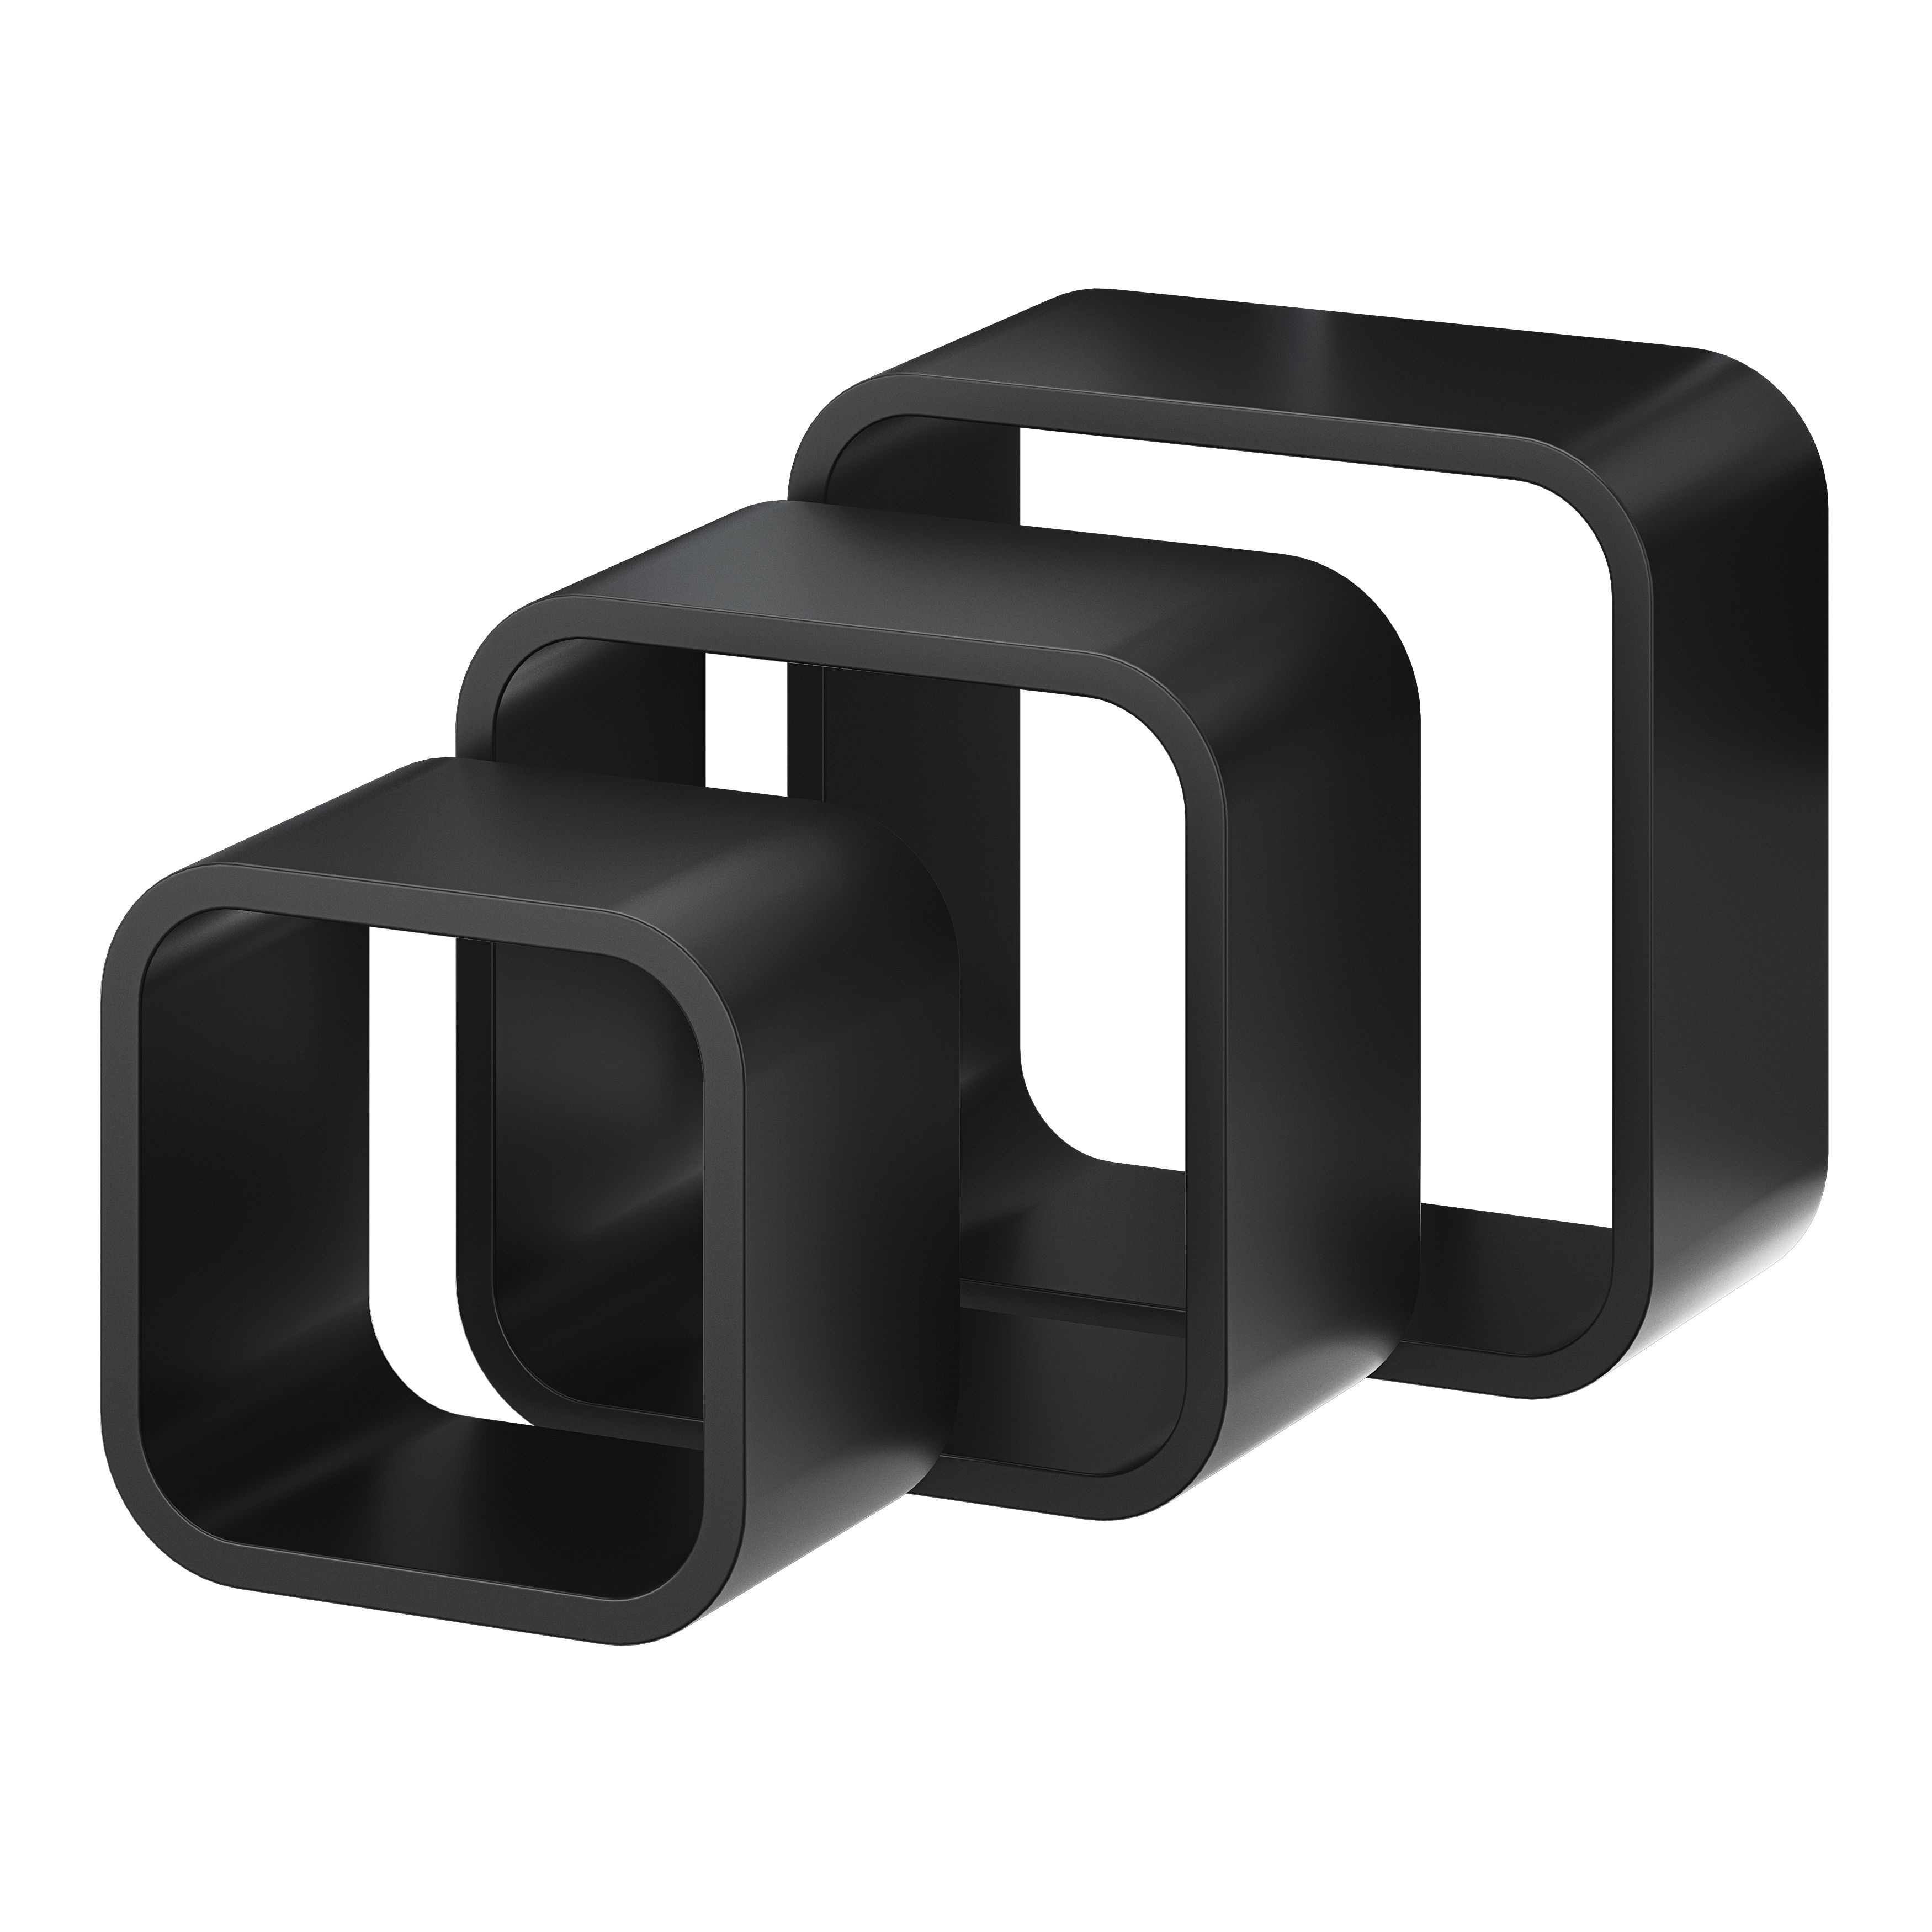 GoodHome Cusko Cube shelf (L)32.5cm x (D)15.5cm, Set of 3